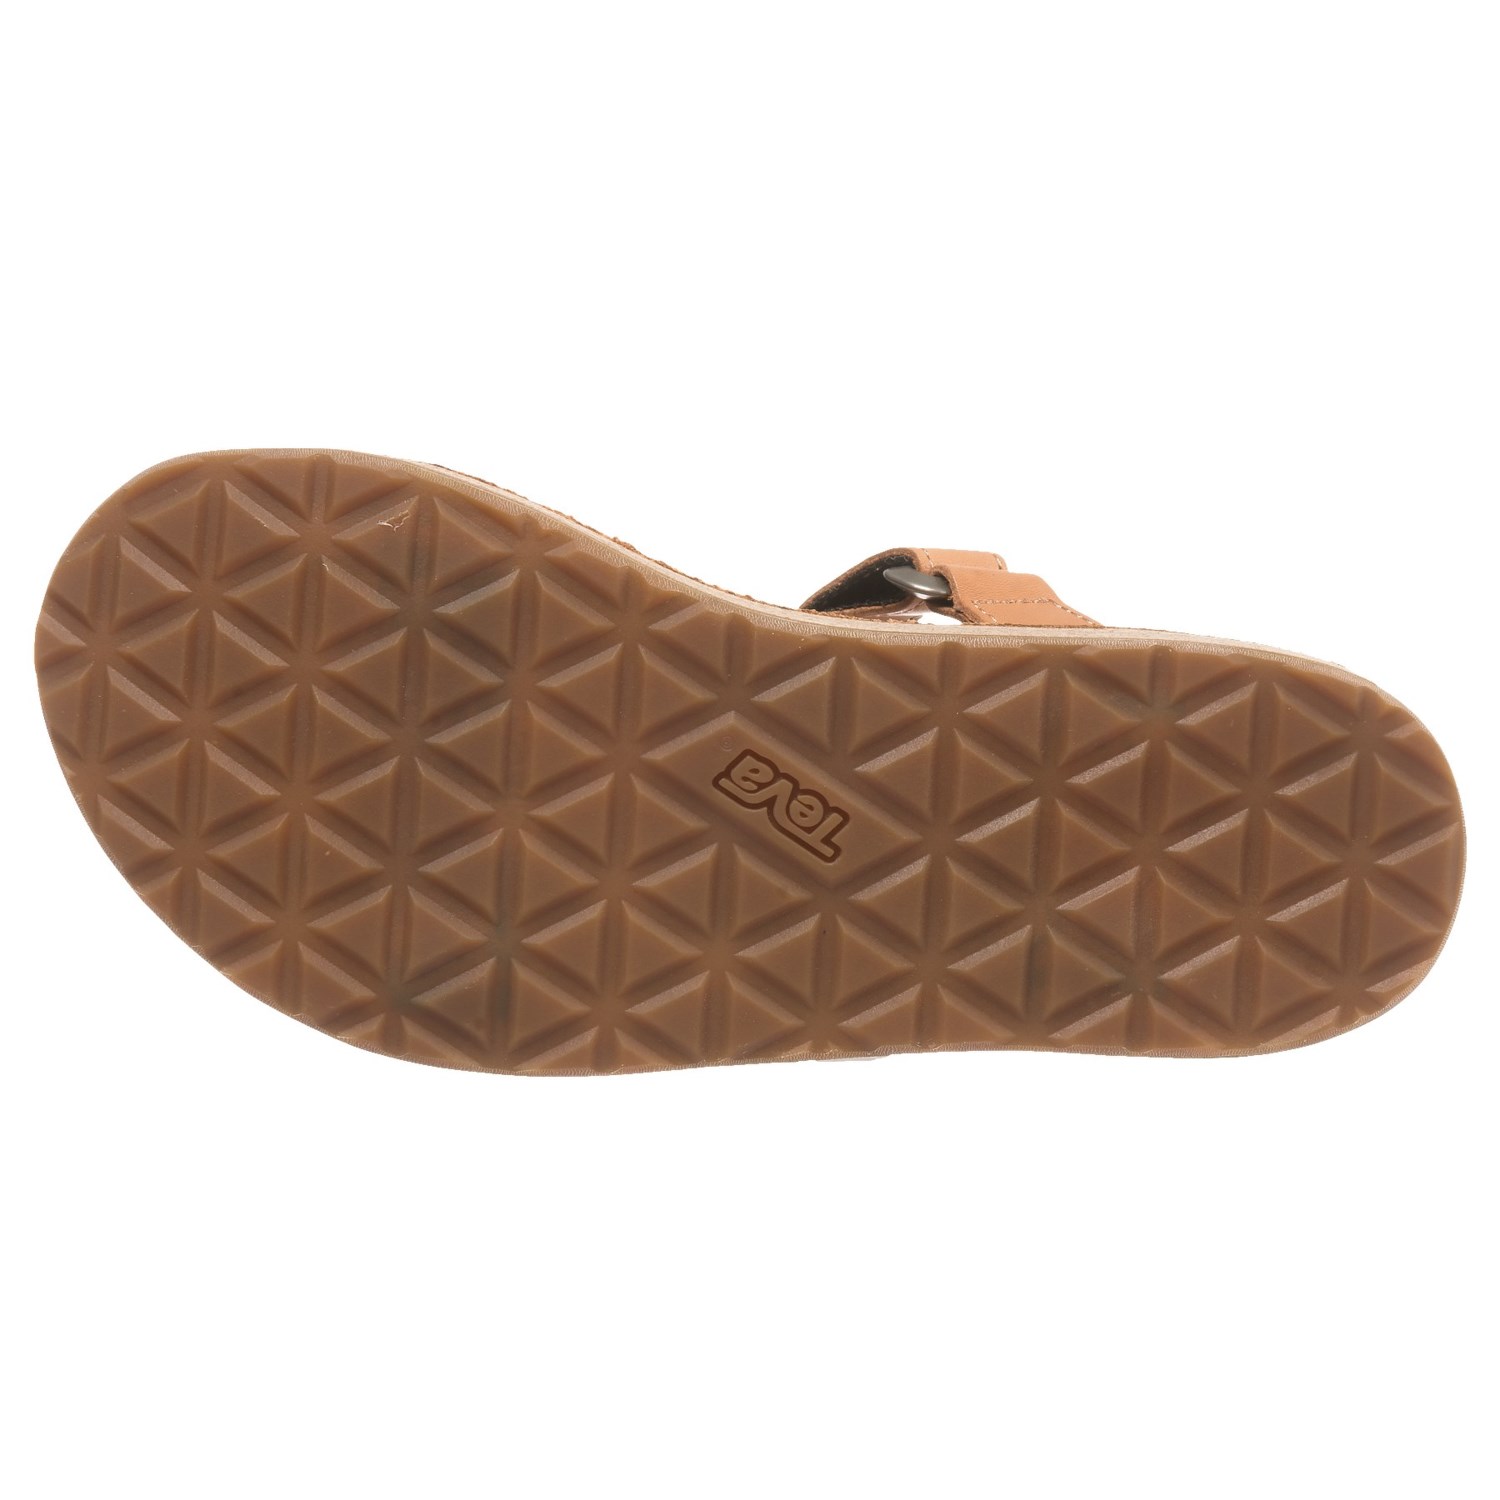 Teva Universal Slide Sandals (For Women) - Save 56%